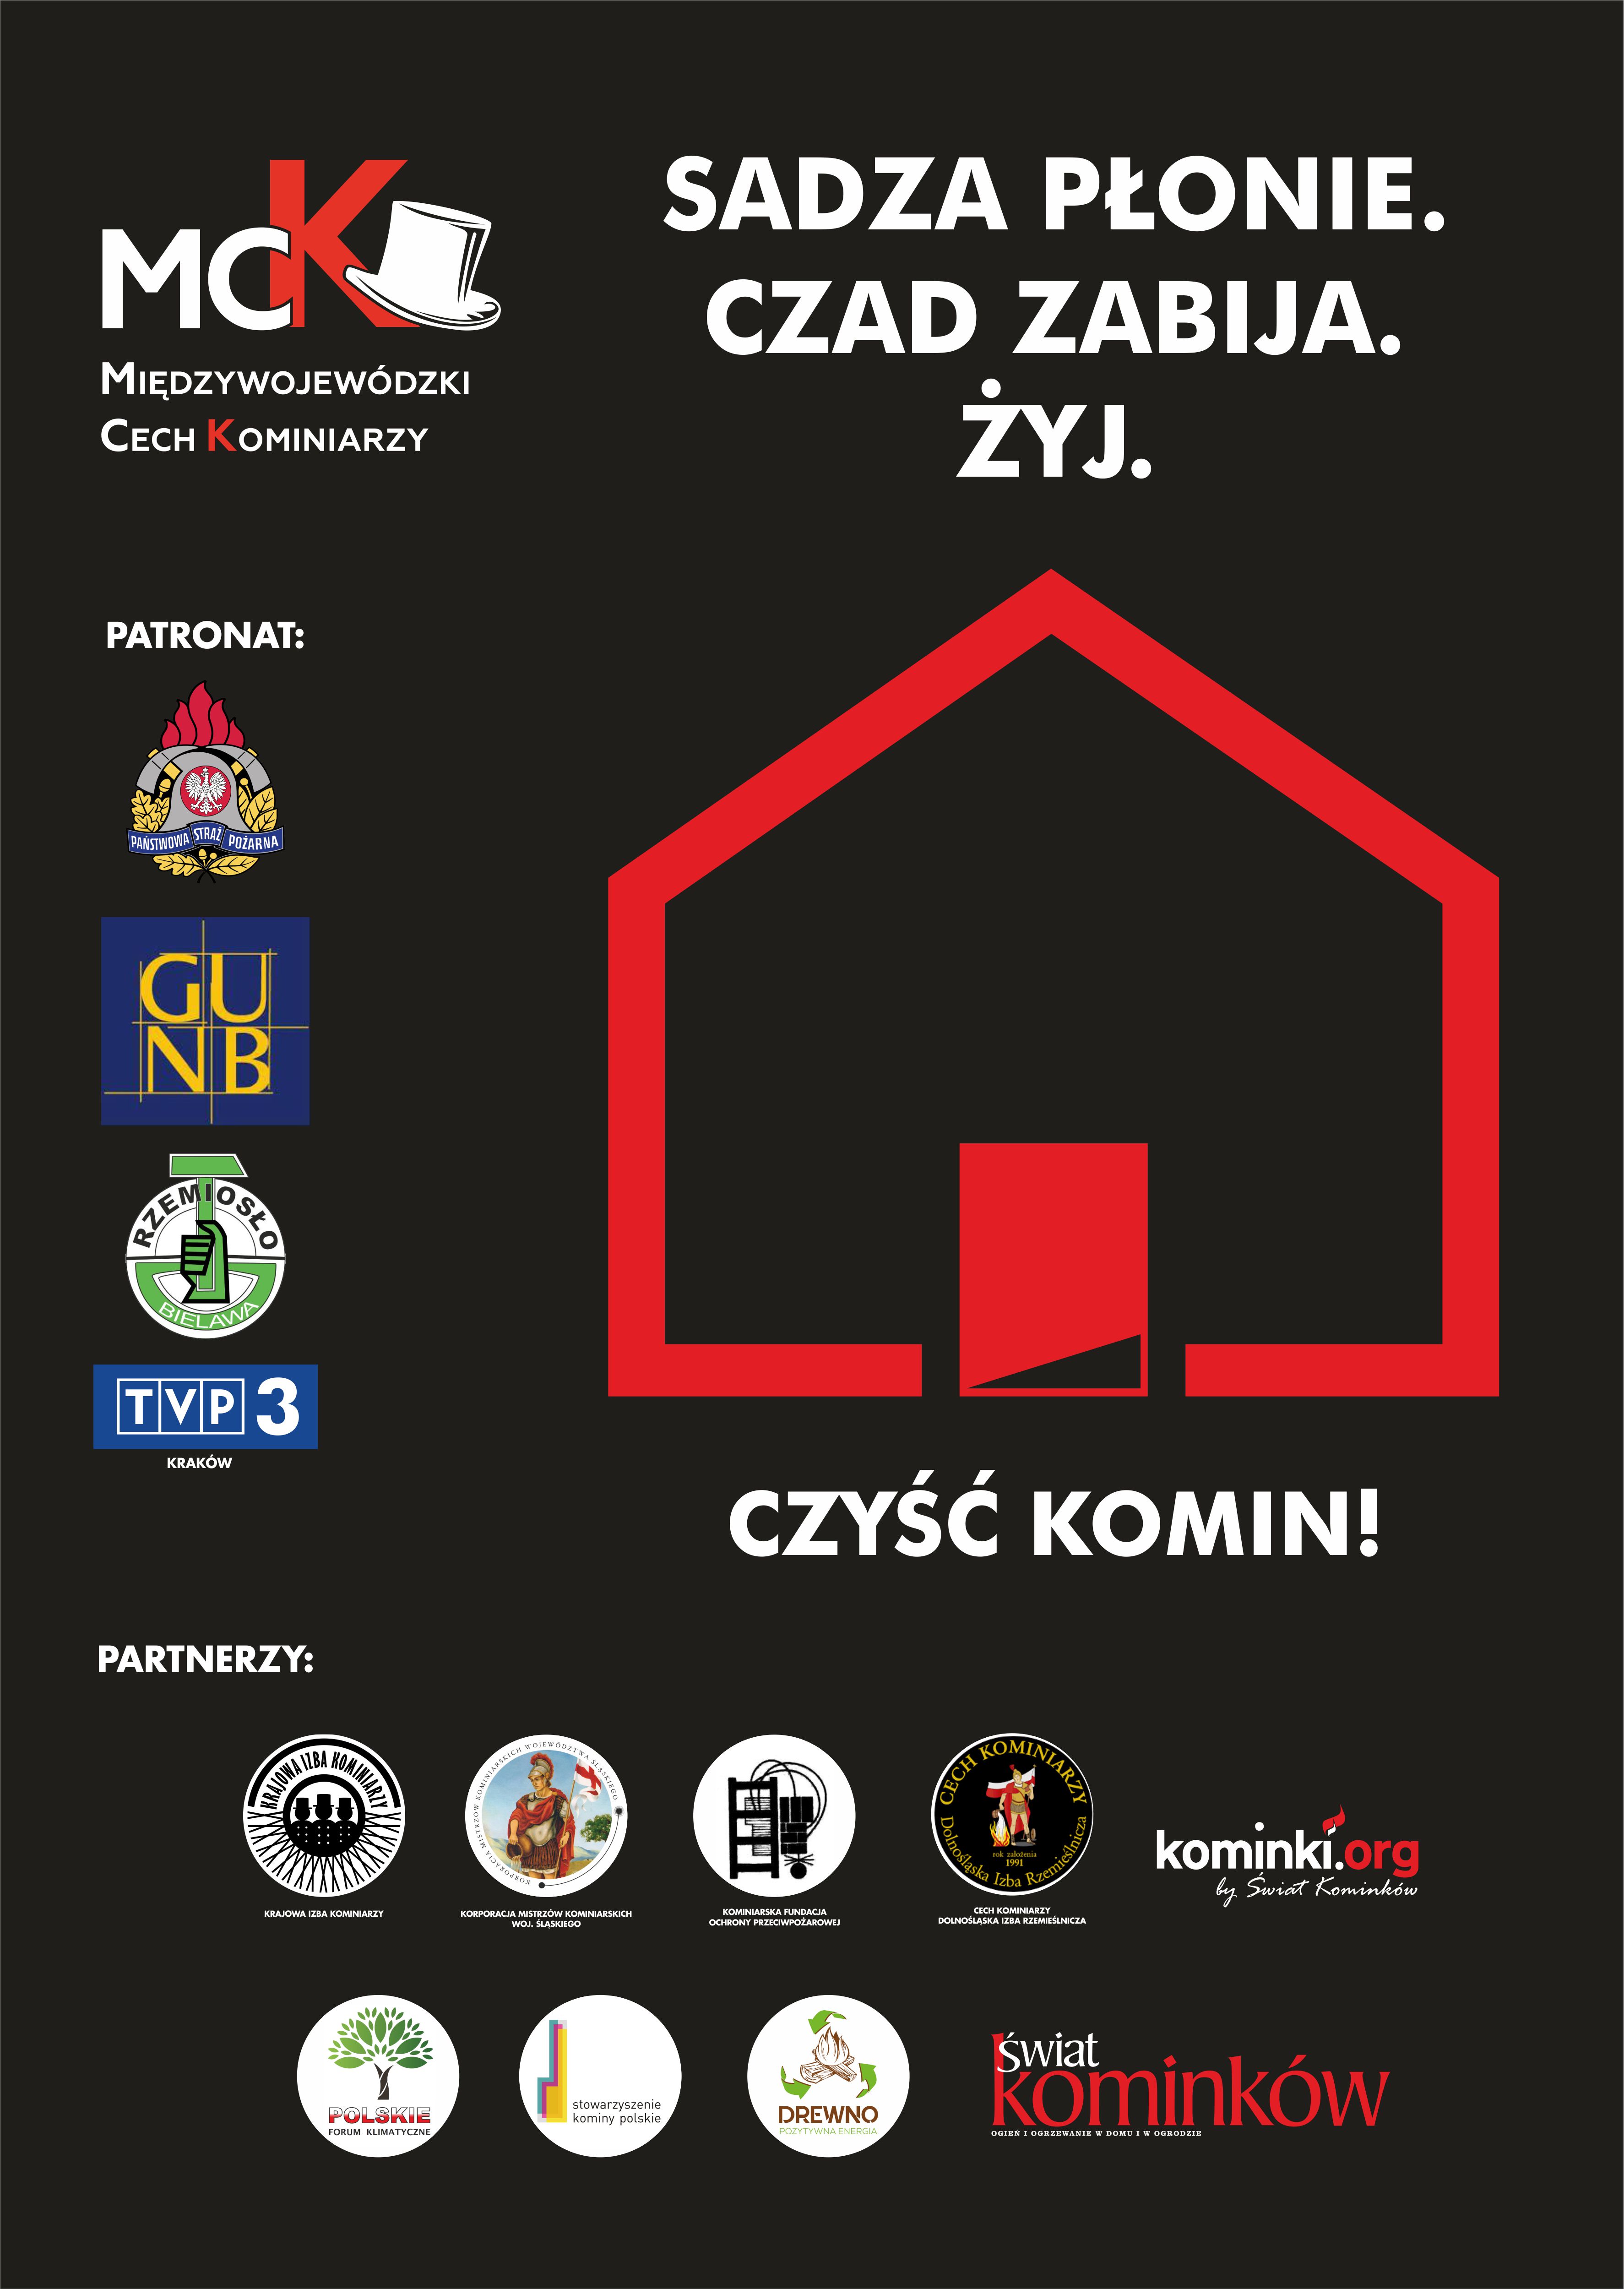 Informacja dotycząca trzeciej edycji Kampanii Społecznej „Sadza płonie. Czas zabija. Żyj.”  organizowanej przez Międzywojewódzki Cech Kominiarzy.